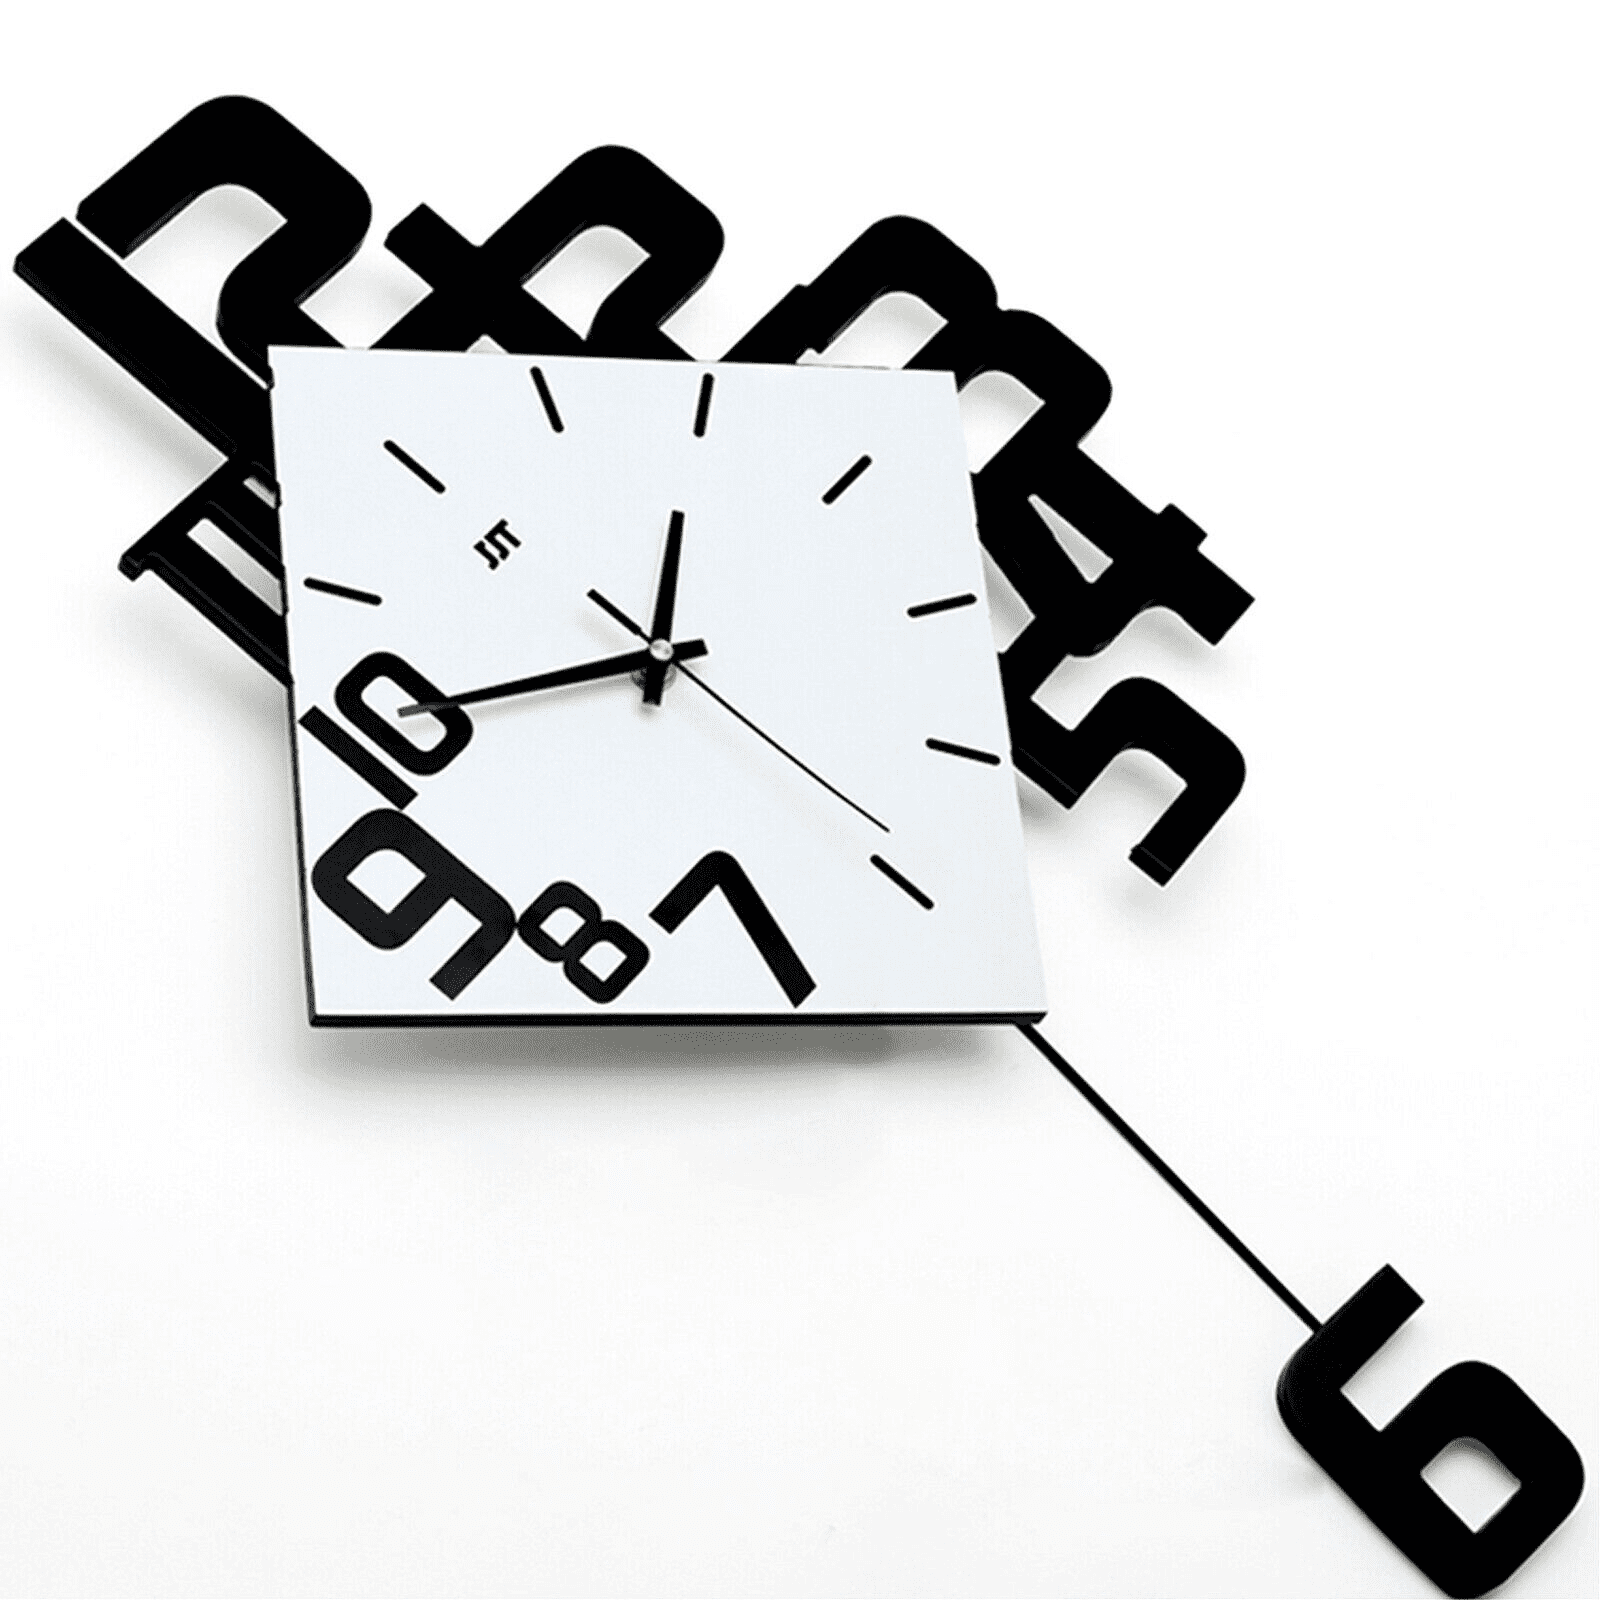 Designer Wall Clocks